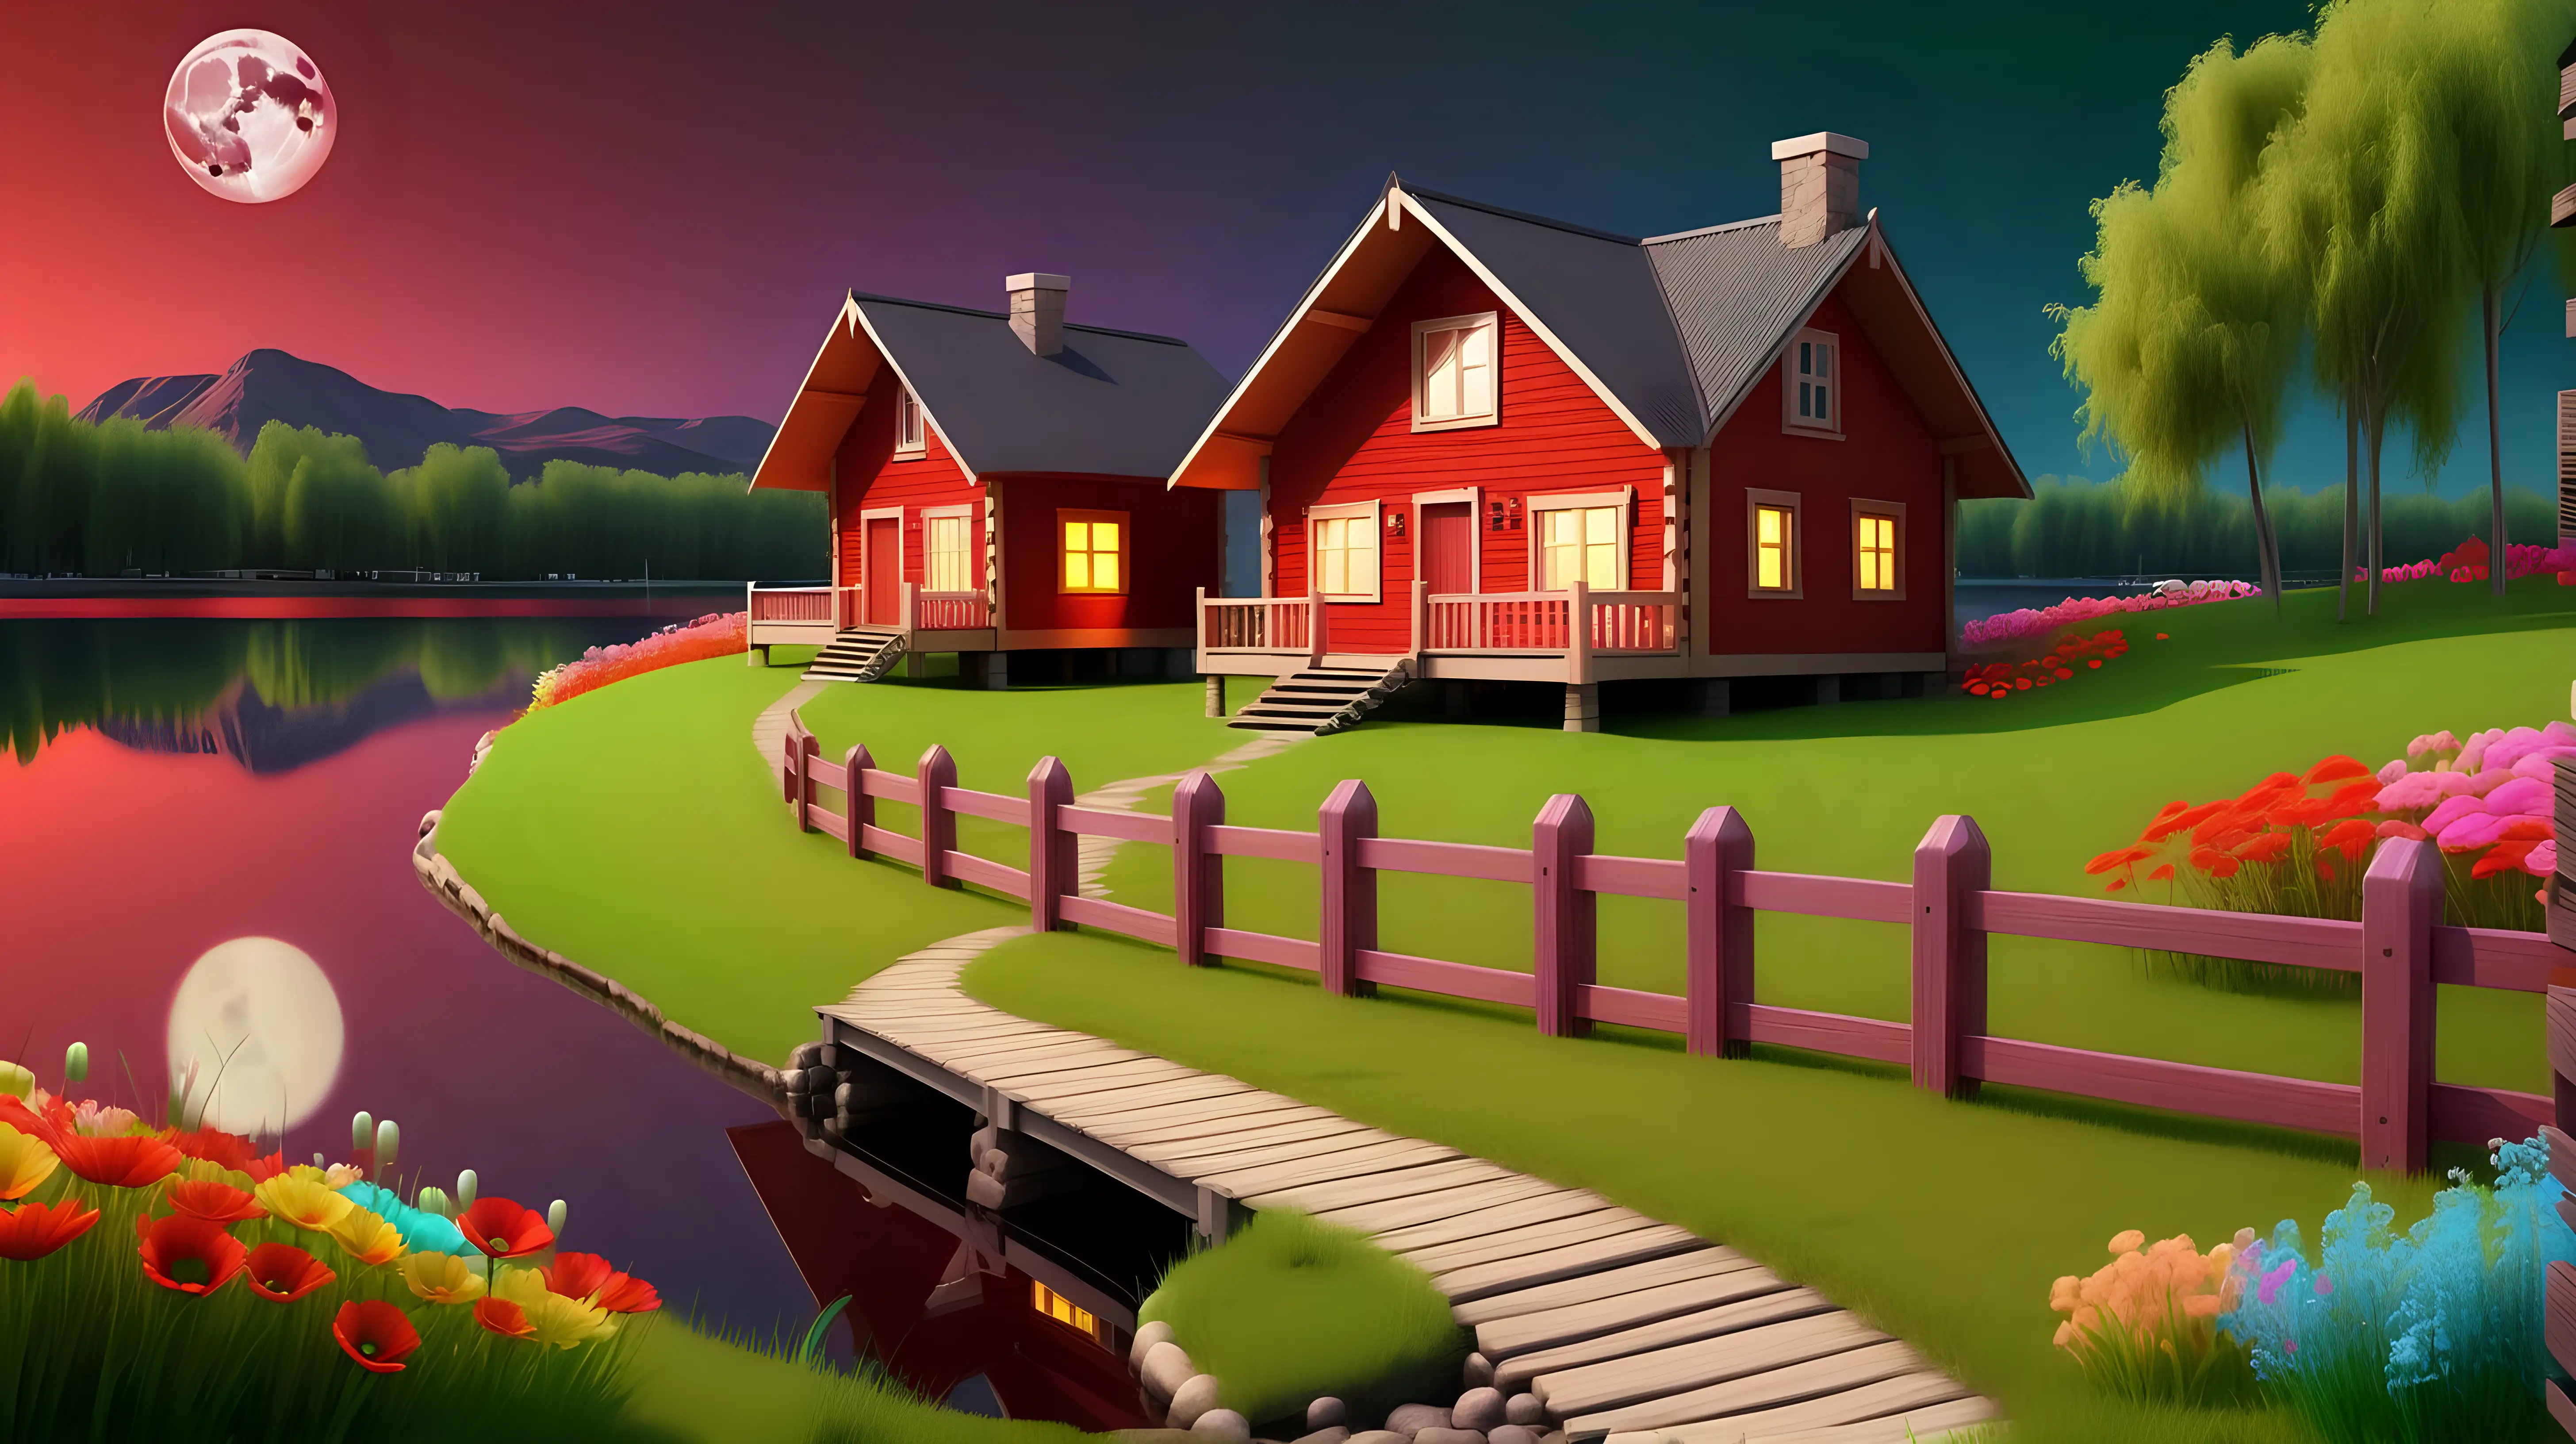 O casa de lemn, noaptea cu o luna plina,  malul unui lac, gard de lemn pe drum, iarba verde cu multe flori colorate, cerul rosu